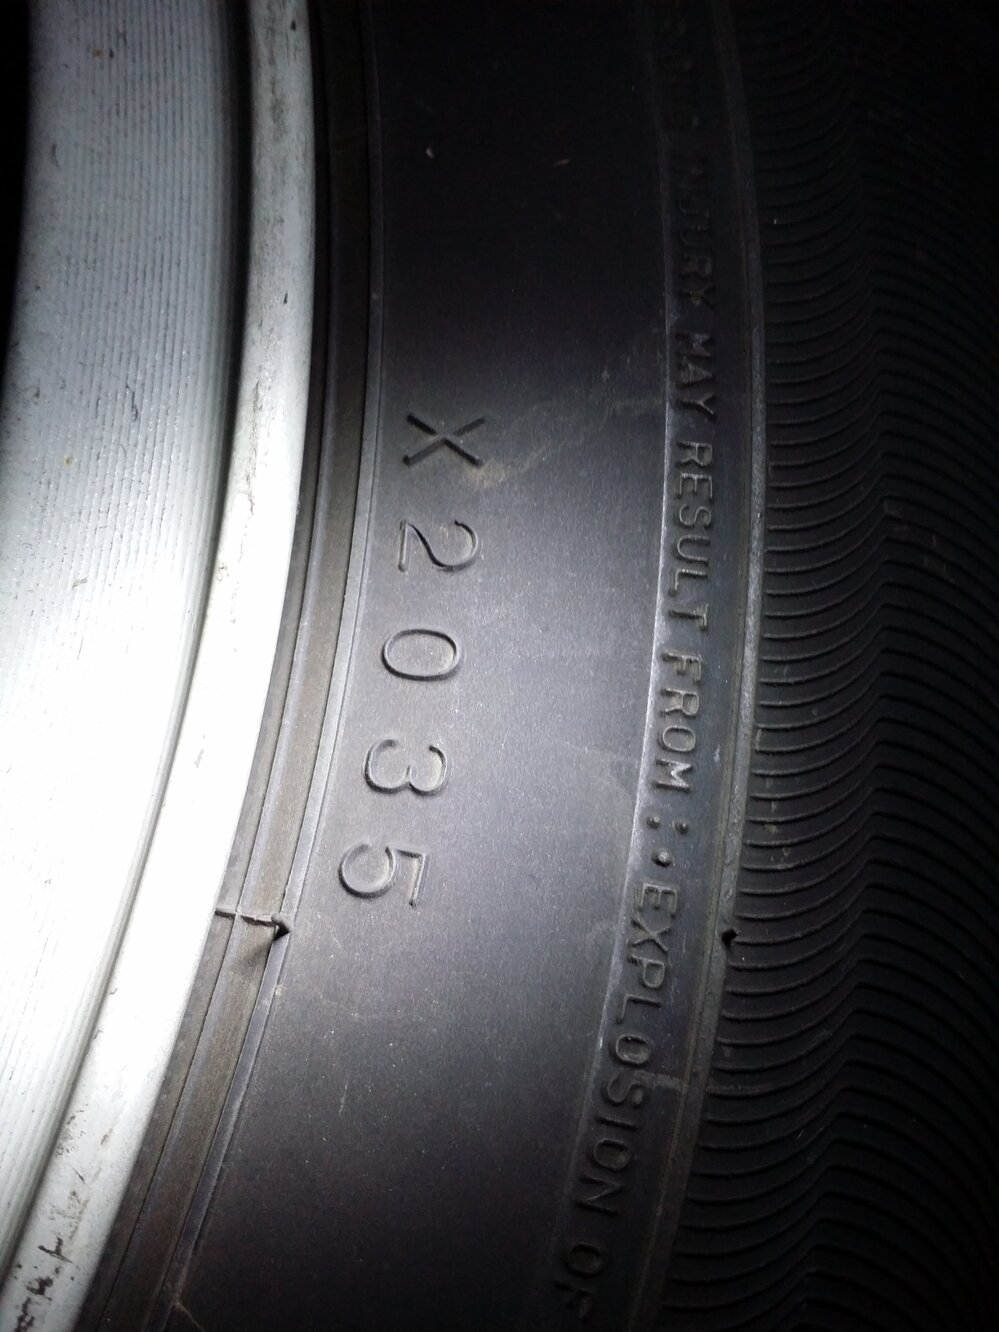 タイヤの製造年について。ダンロップなのですが、『X2035』と４桁の 